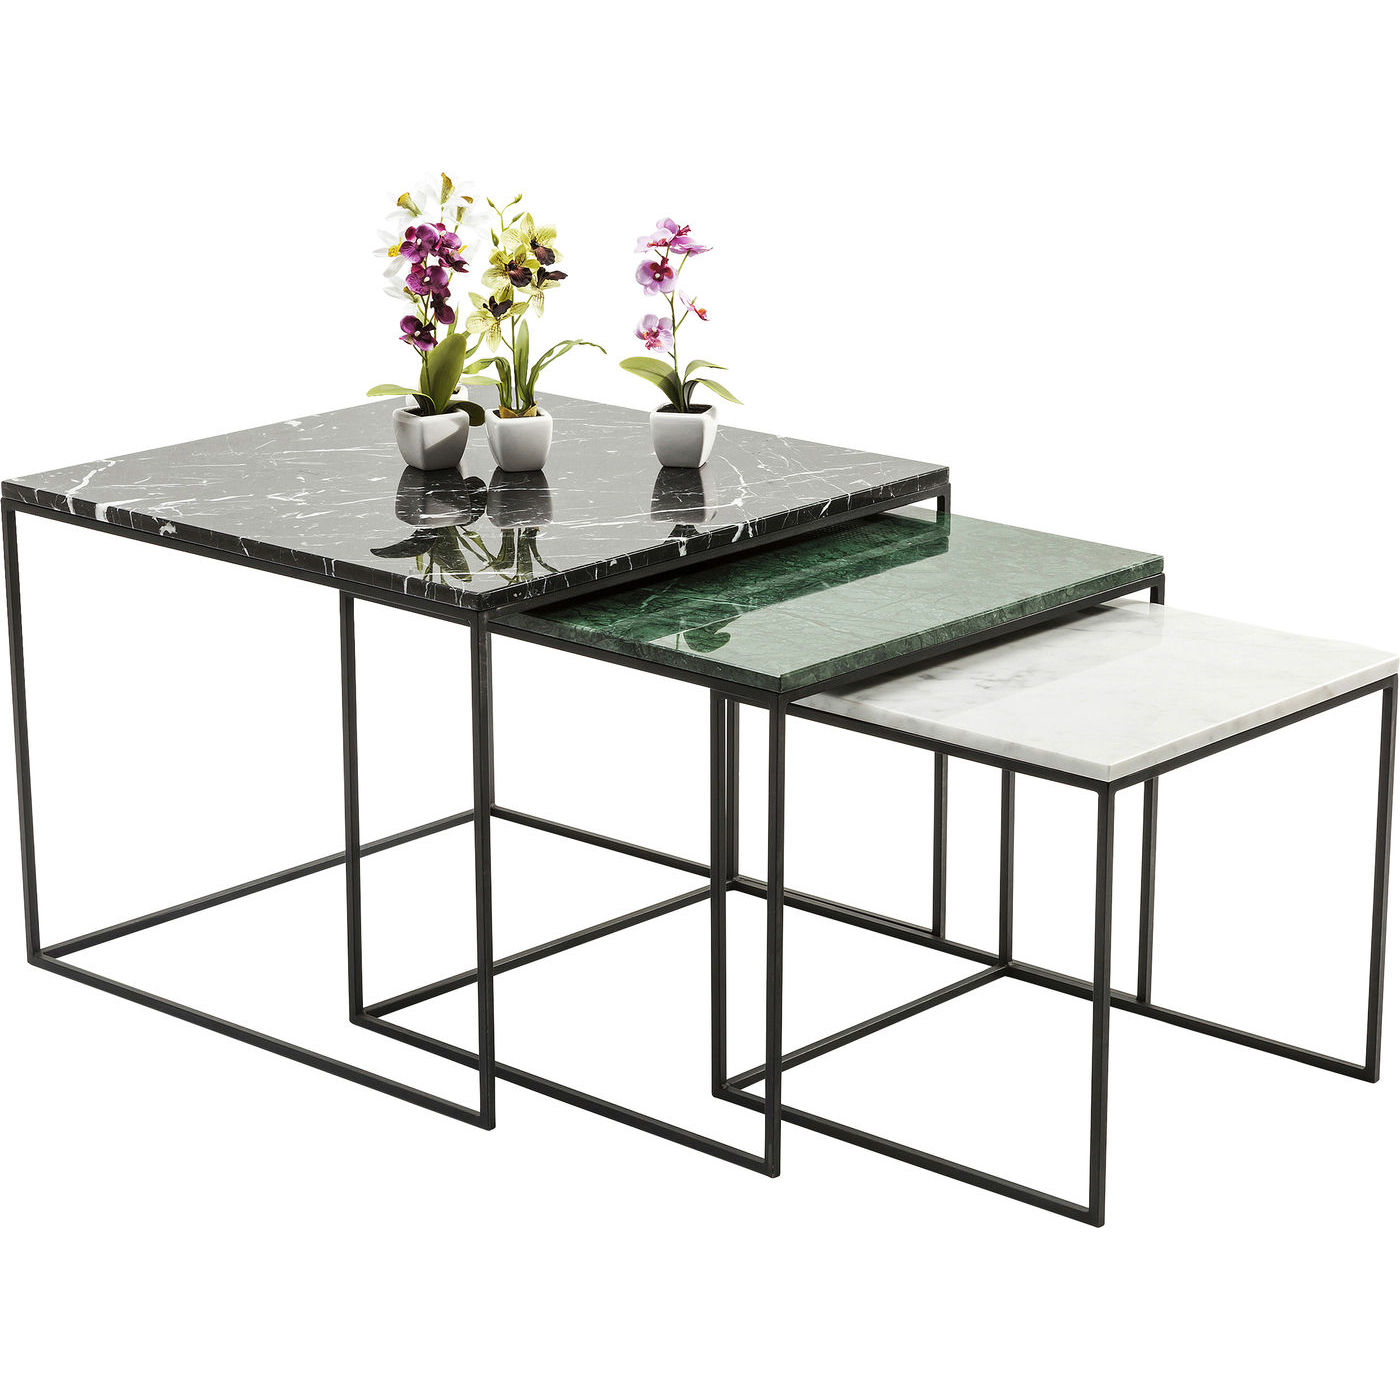 KARE DESIGN Marmor East Coast indskudsborde - grønt/sort/hvidt marmor og stål (3/sæt) (udgår)